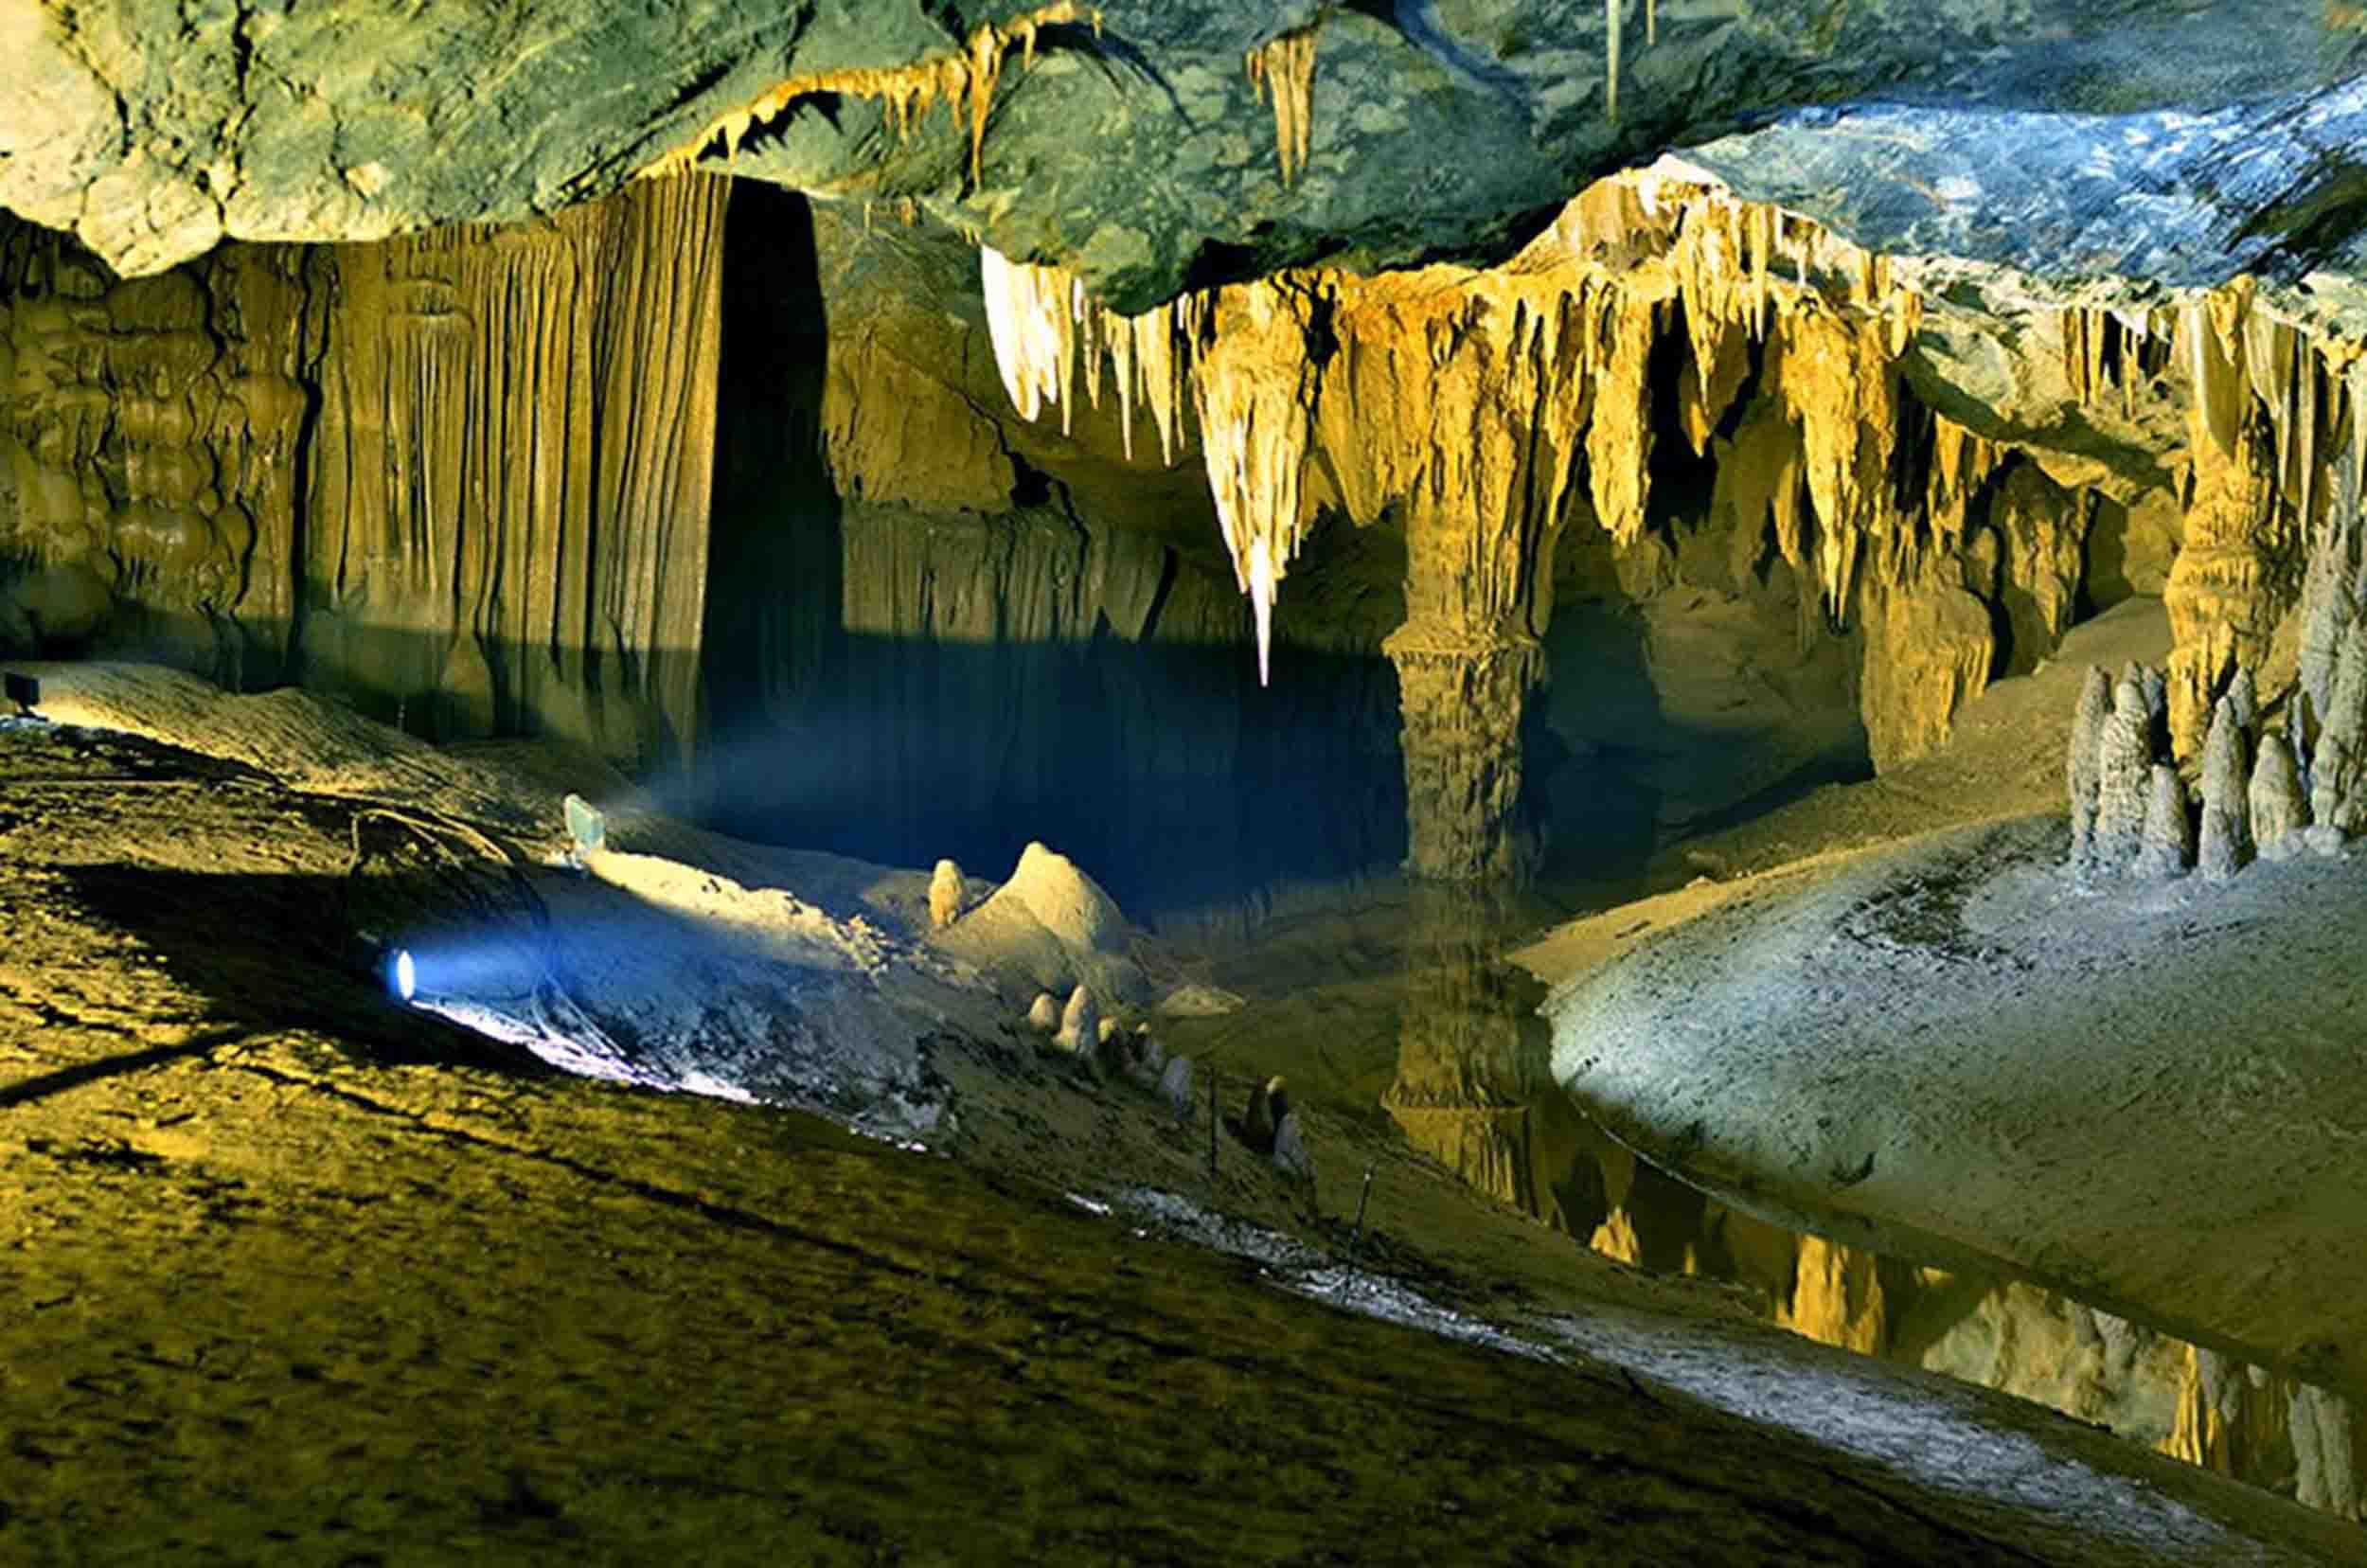 Ke Bang - Phong Nha Cave Full day